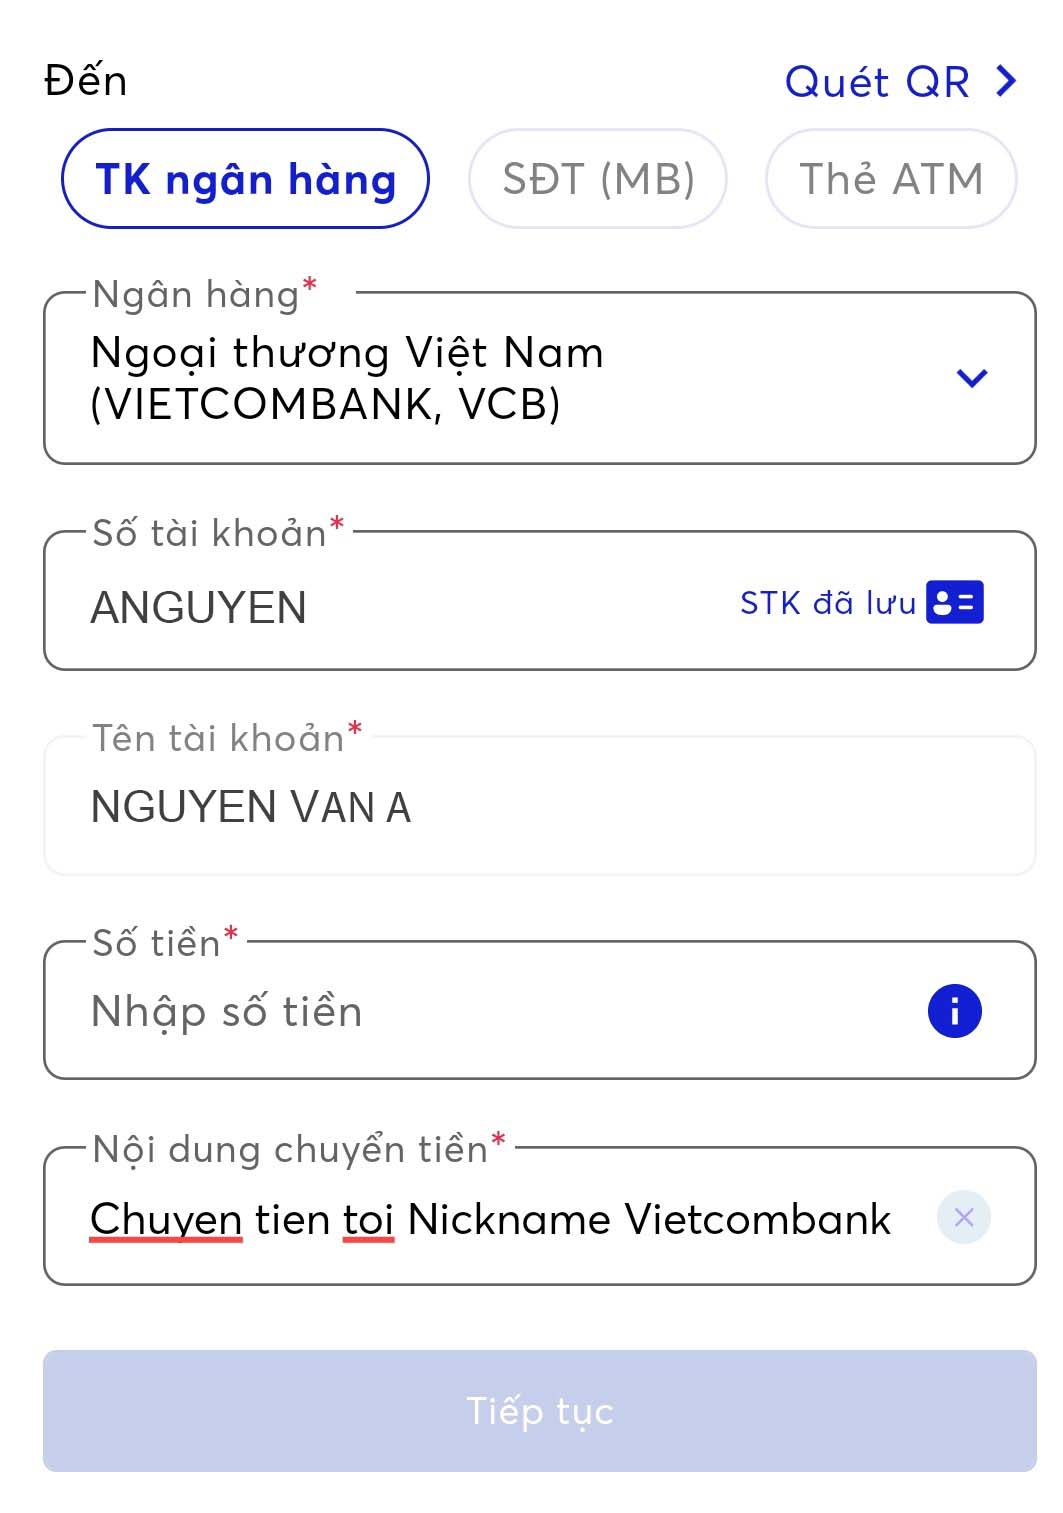 Chuyển tiền thành công chưa? Đừng lo lắng, hãy xem ngay ảnh minh họa của Vietcombank để có thêm niềm tin và tín nhiệm vào các sản phẩm thanh toán của chúng tôi!